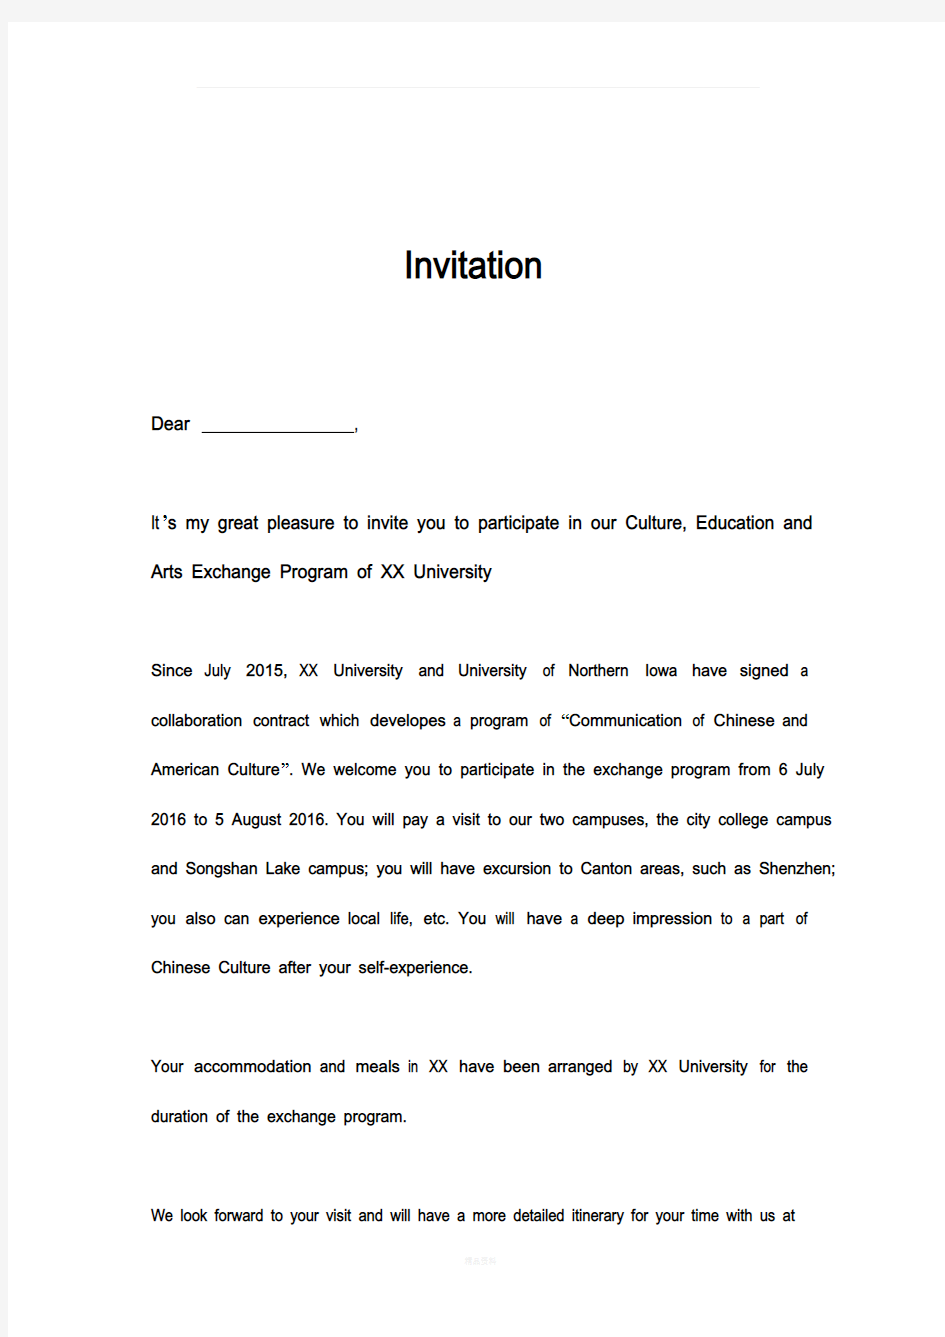 英文邀请函模板invitation-letter